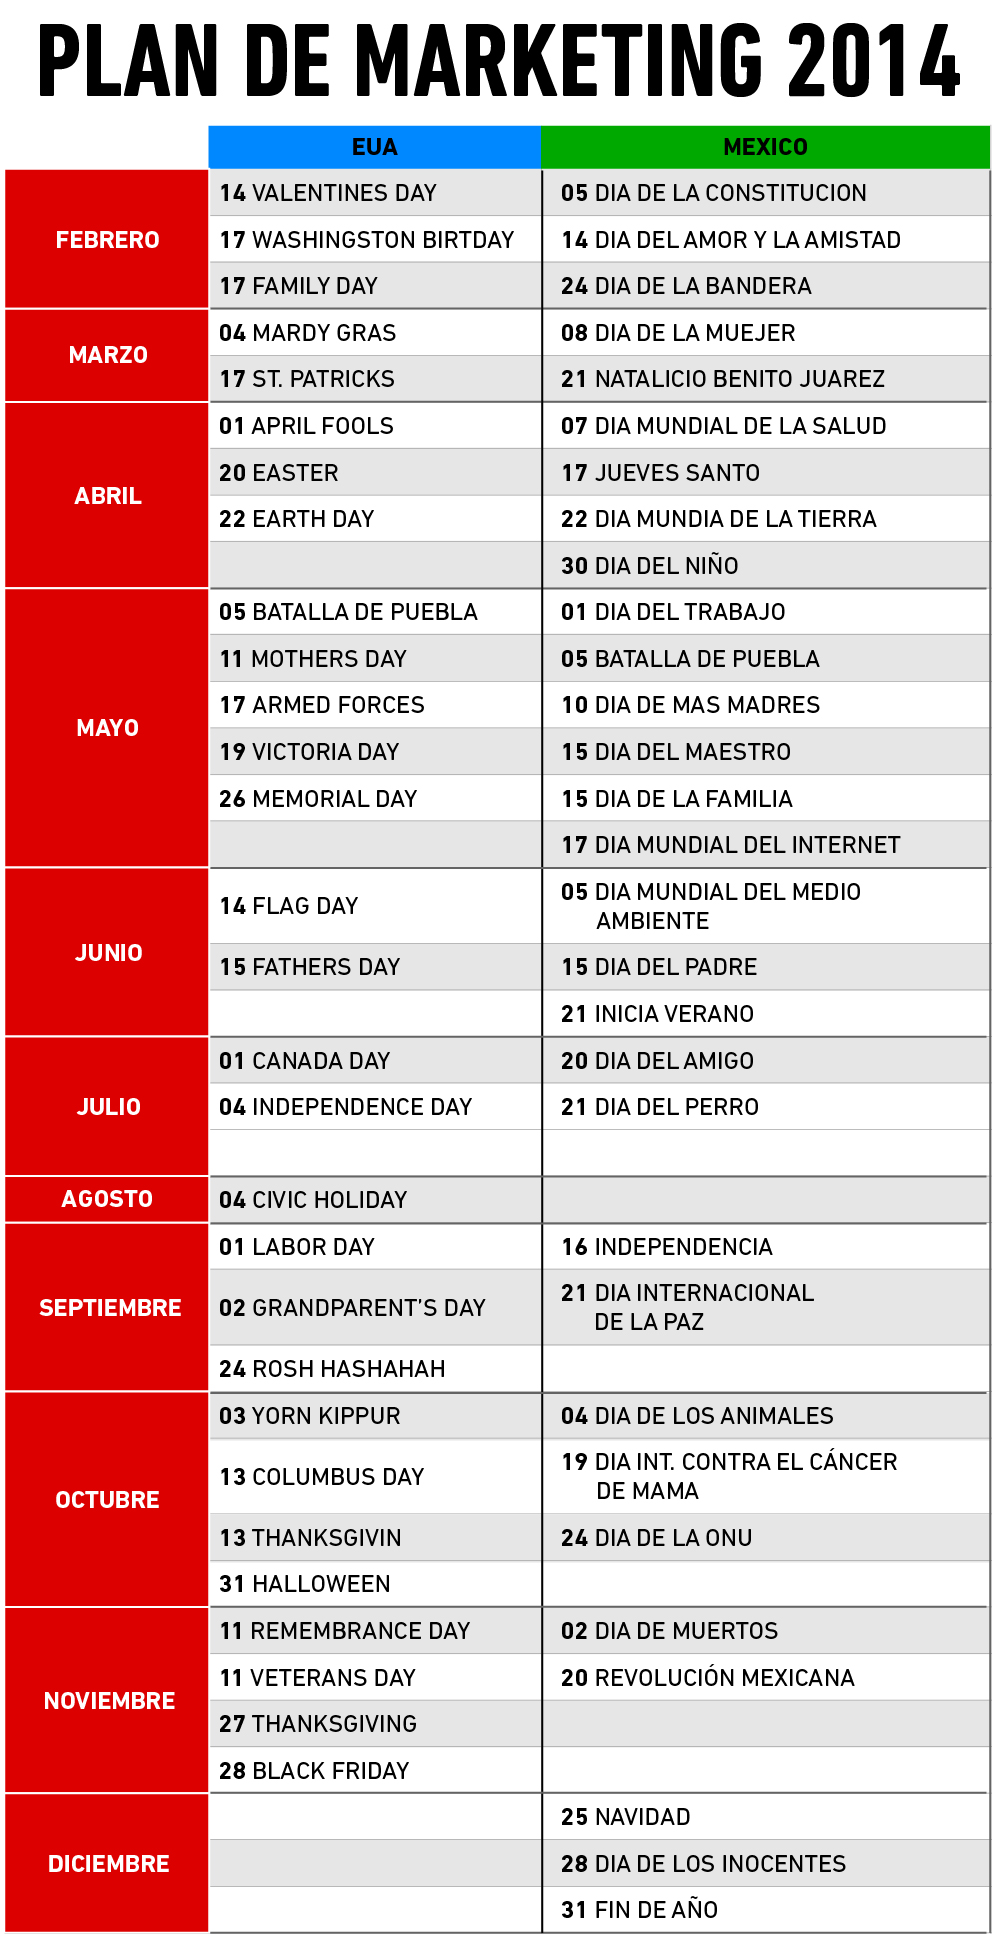 Calendario de promociones 2014